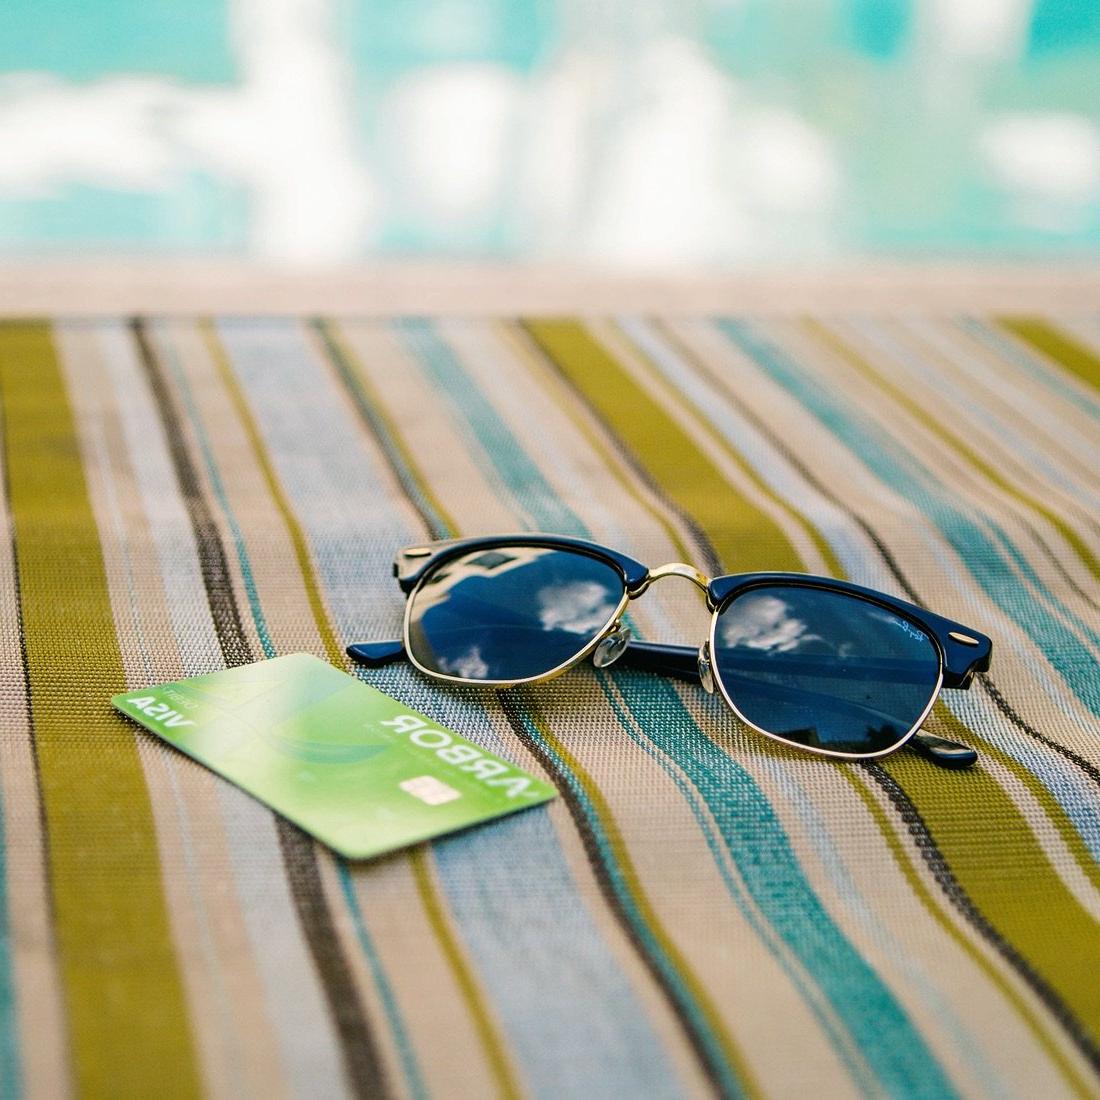 太阳镜和阿伯牌借记卡放在沙滩浴巾上.